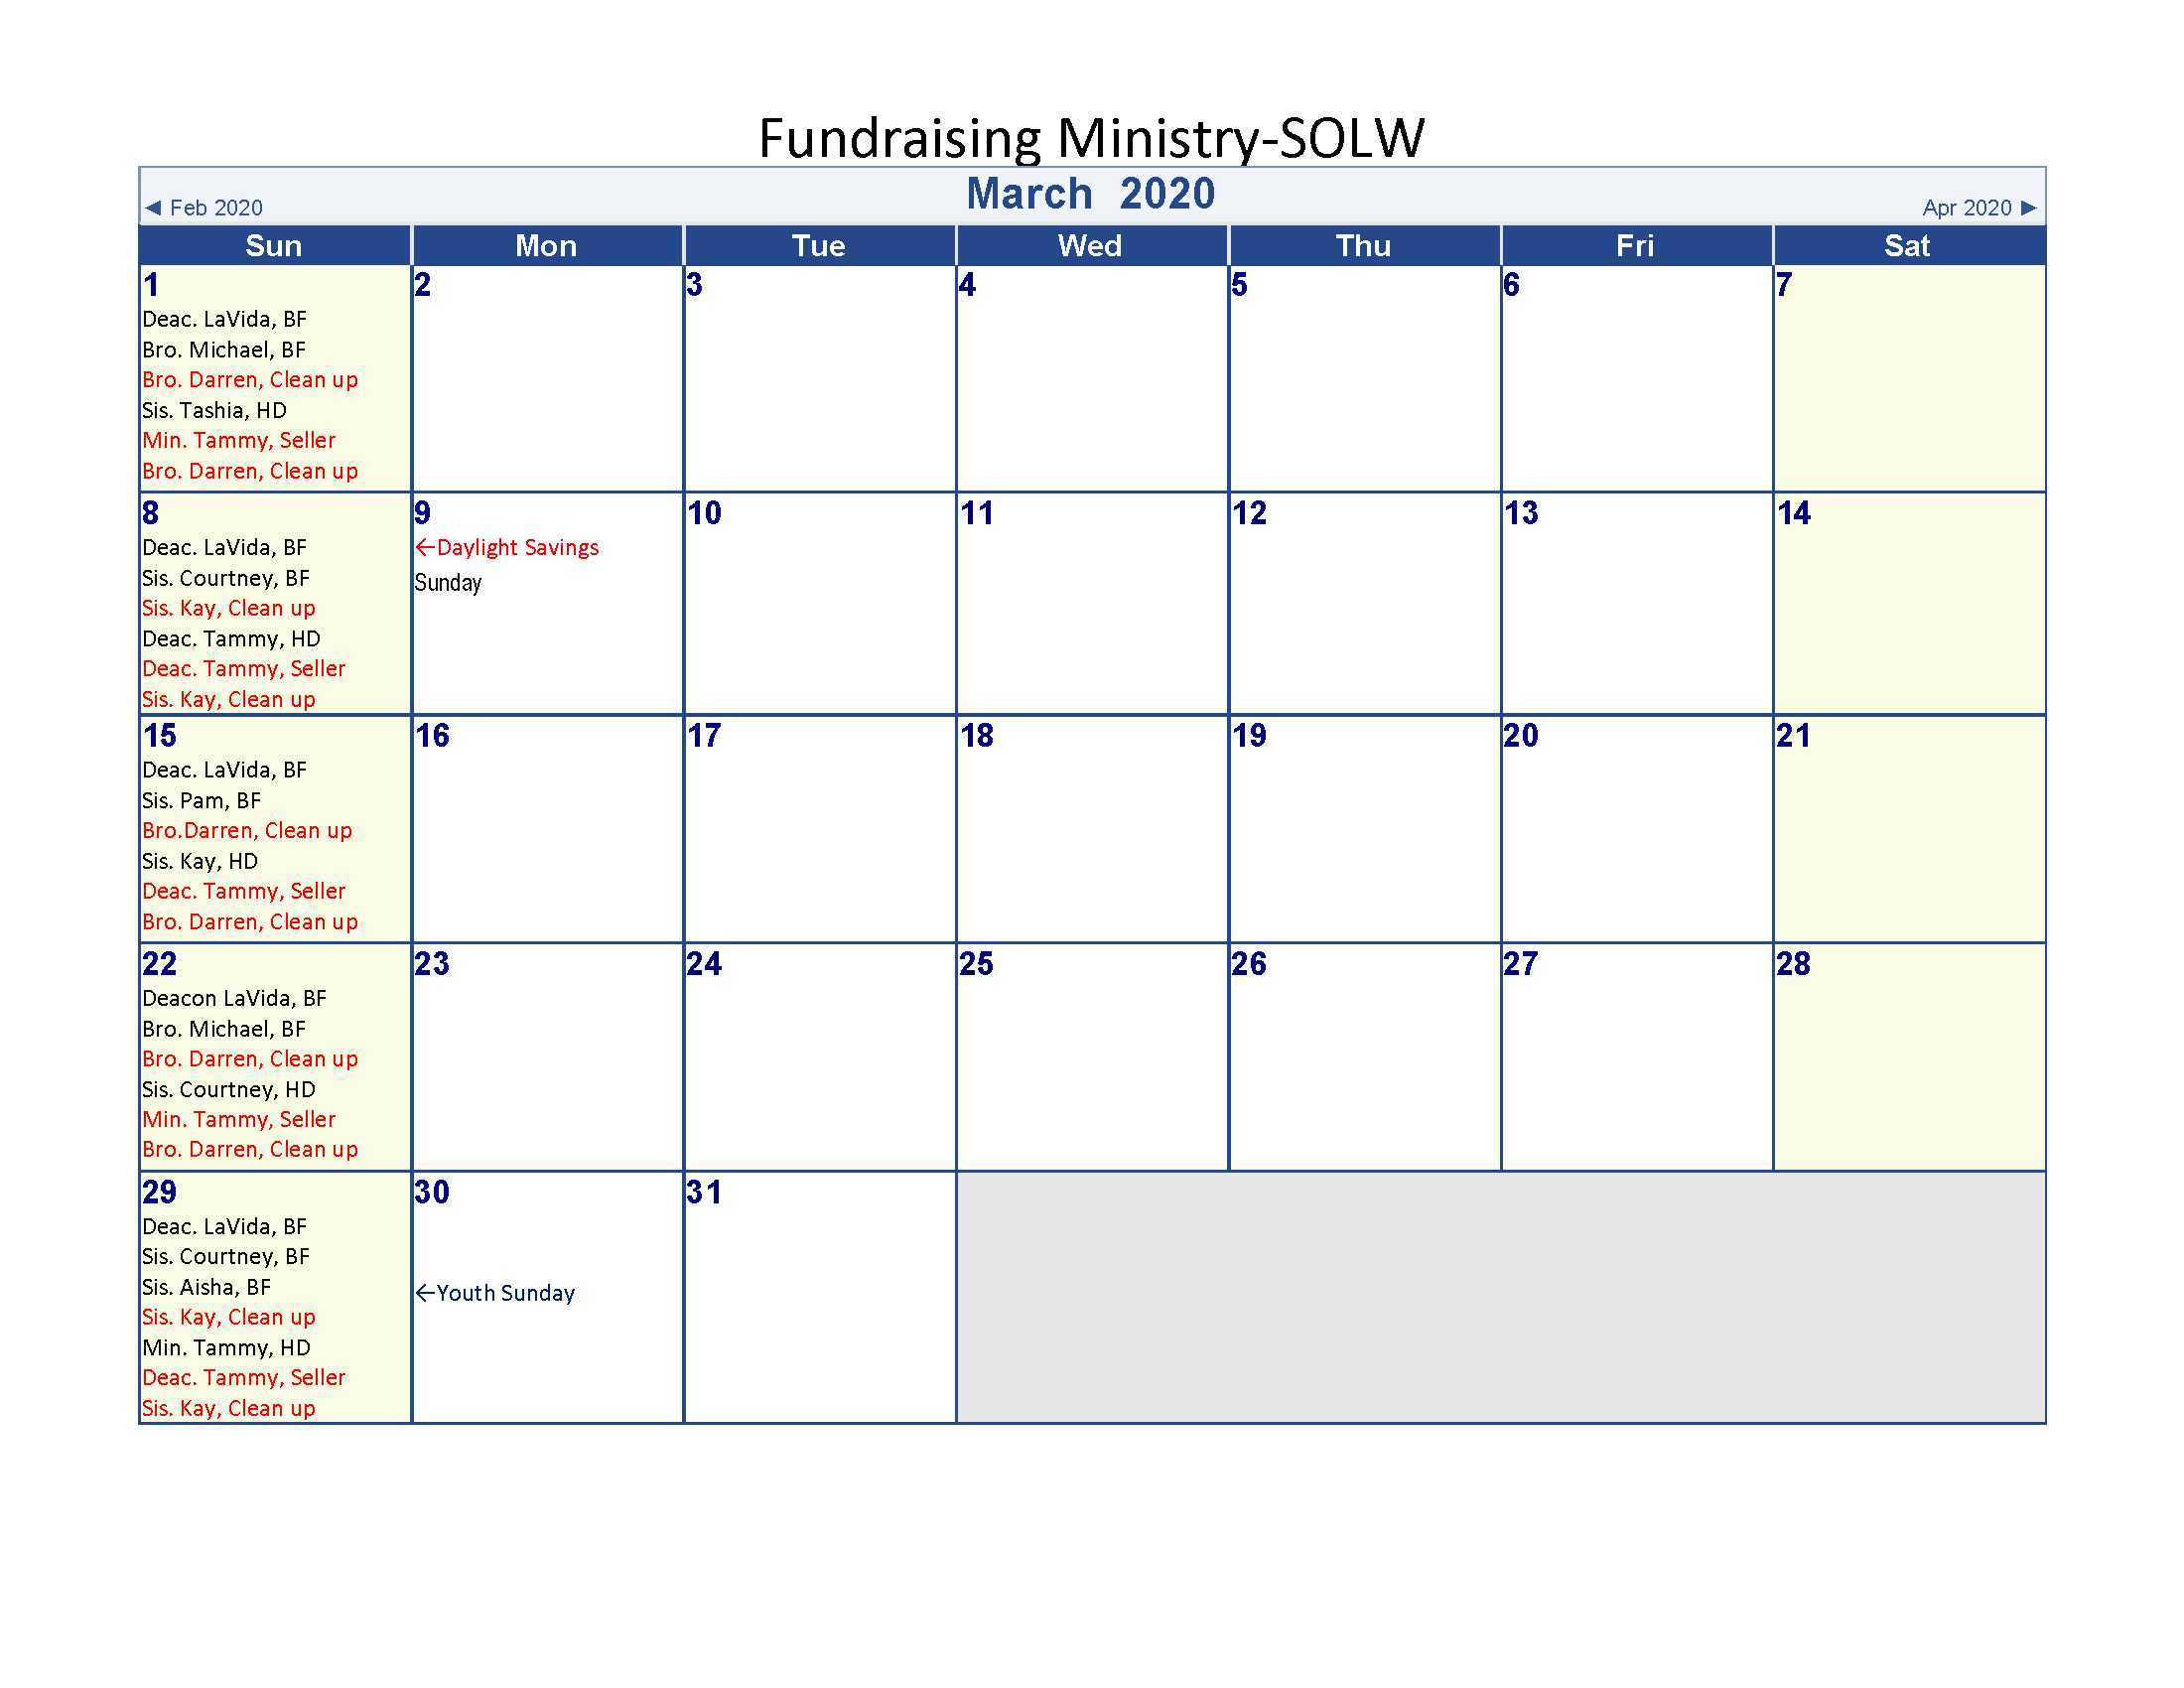 Fundraiser calendar